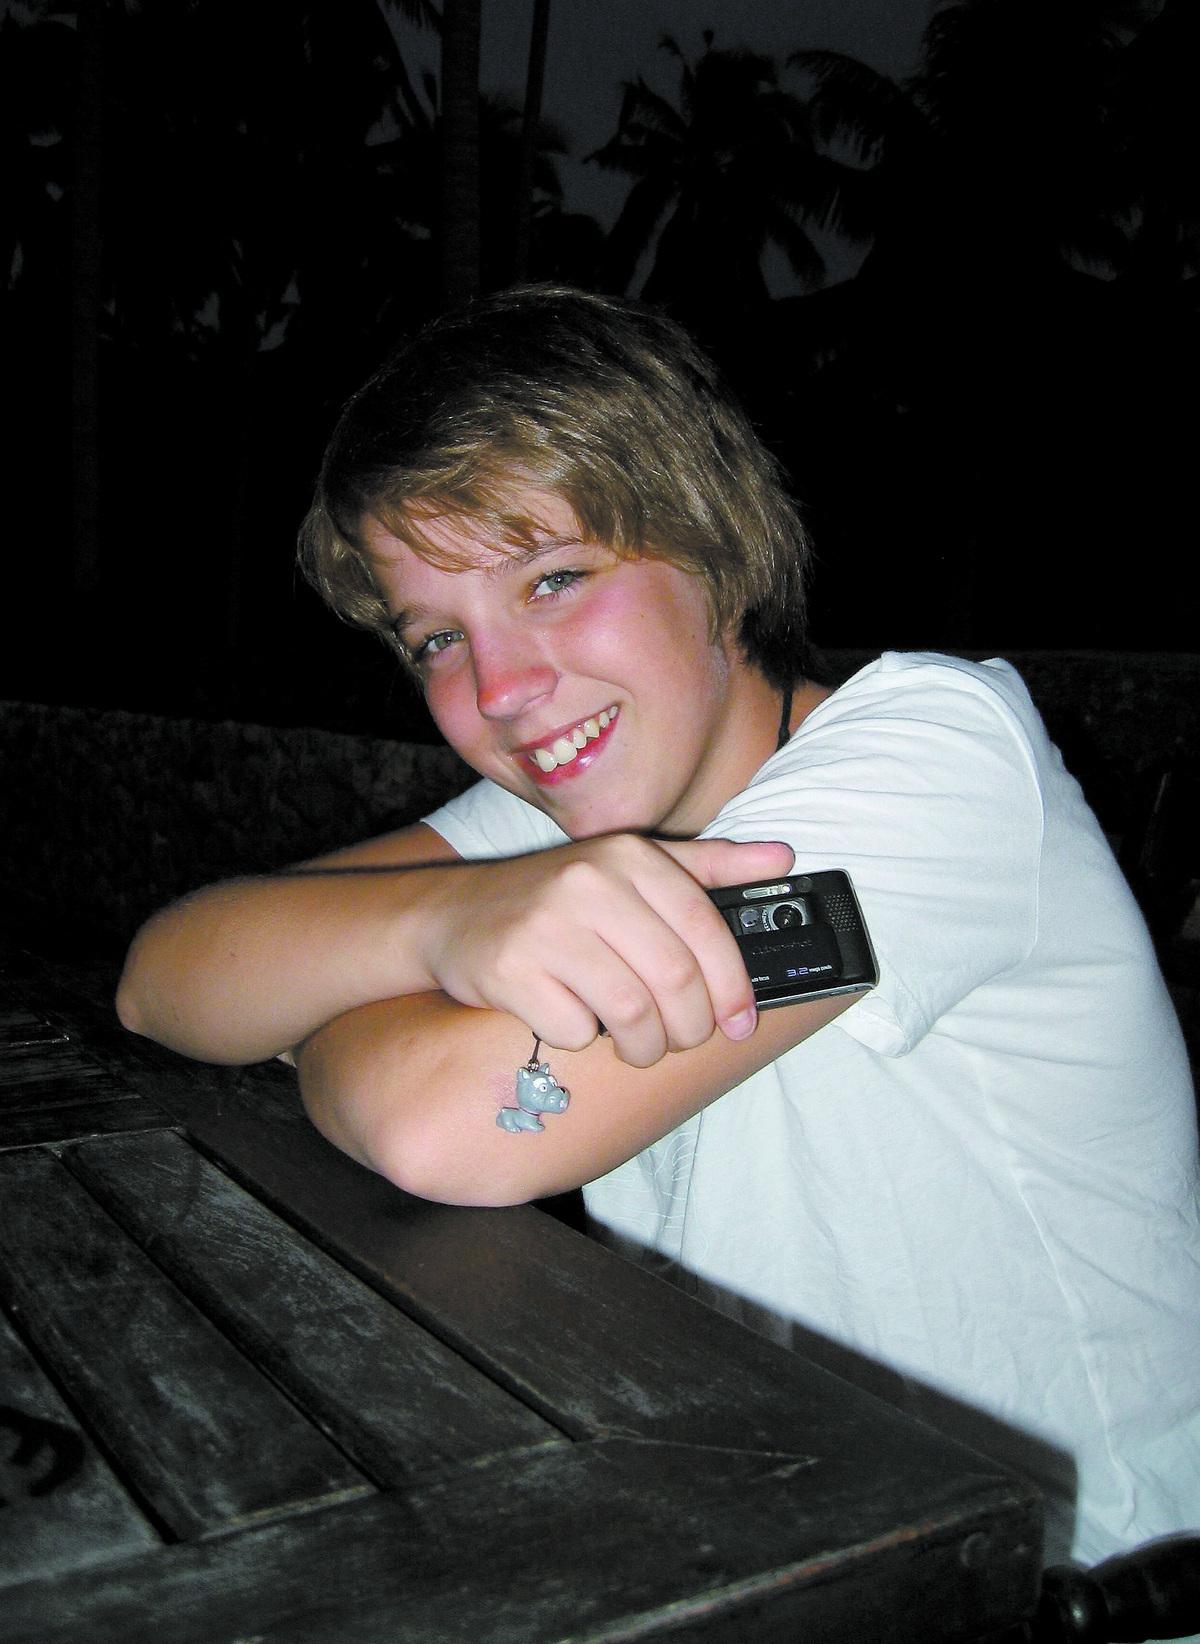 BLEV 14 år Mikael Gerhardsson, 14, dog när han klättrade upp på ett stillastående godståg. Familjen har själv valt bilden på Mikael. ”Jag tycker att det är en väldigt bra bild. Det är en karaktärsbild på honom”, säger Stefan Gerhardsson.